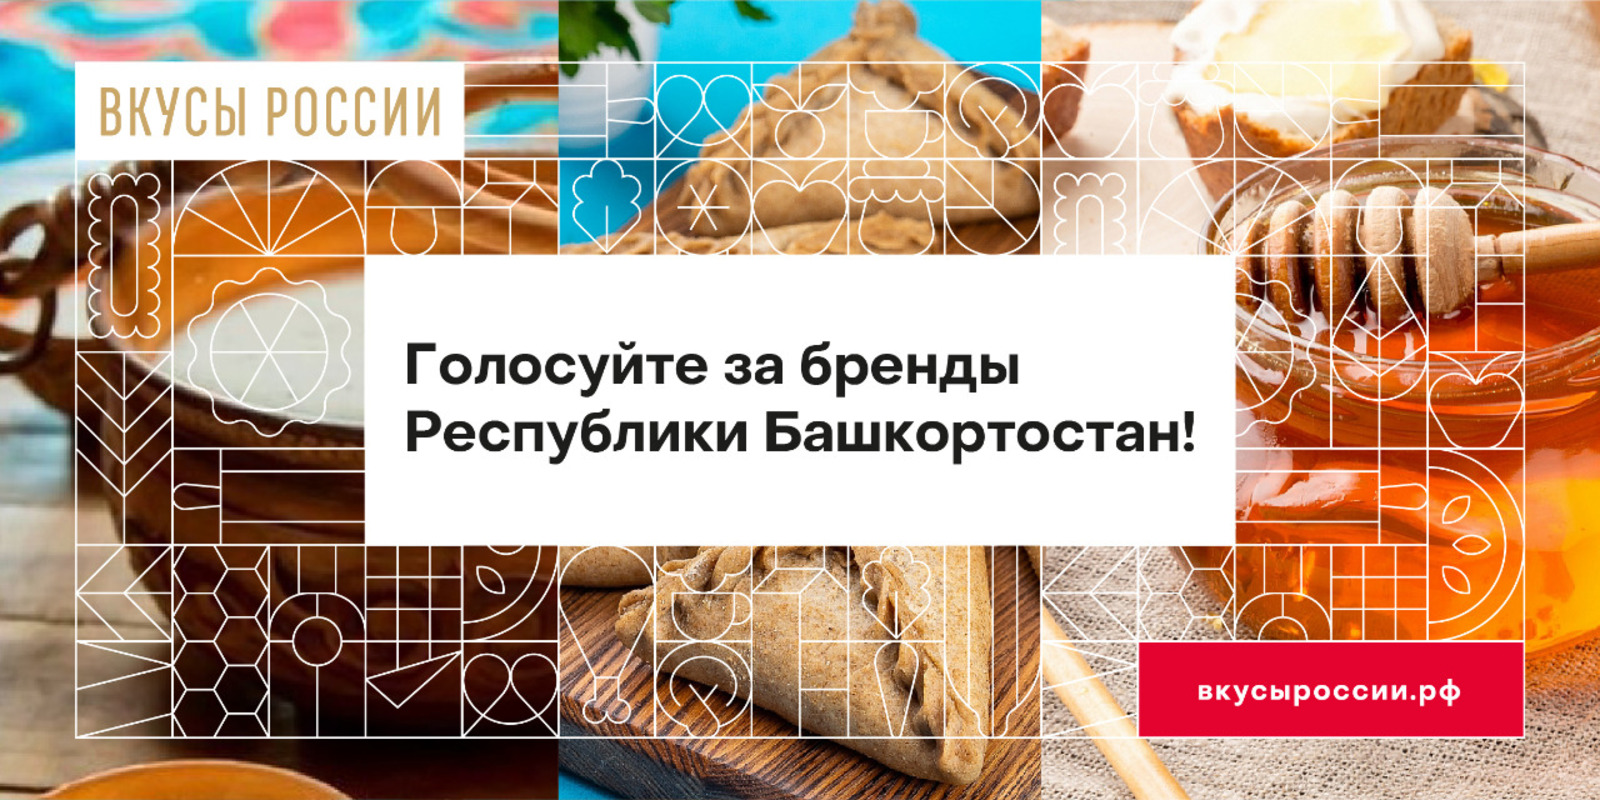 Поддержим башкирские бренды: до конца голосования на конкурсе «Вкусы России» осталось 10 дней